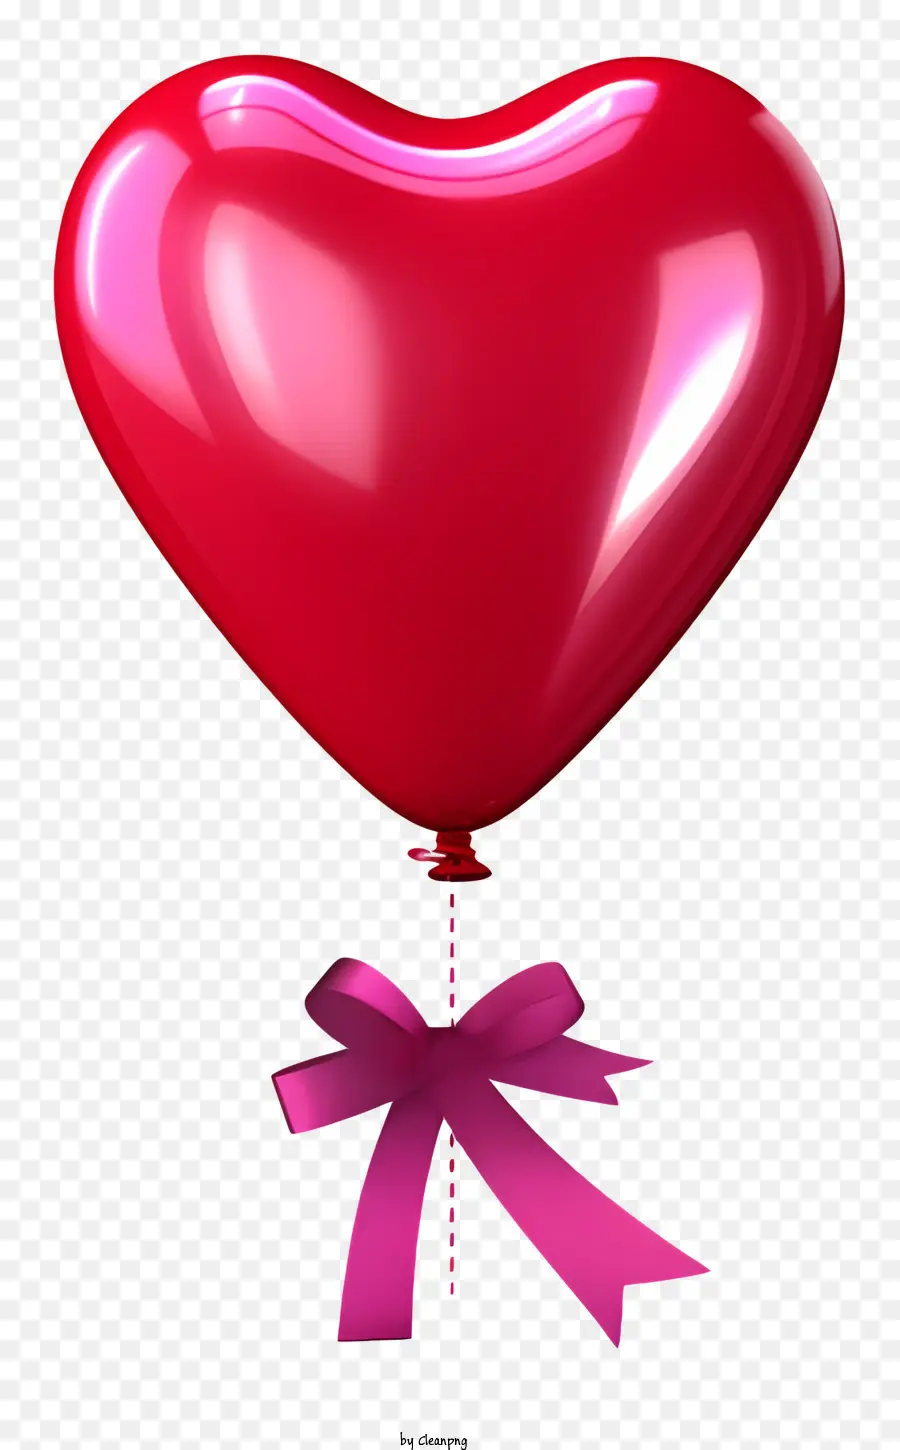 Palloncino Rosso - Balloon del cuore rosso con nastro rosa pende romanticamente